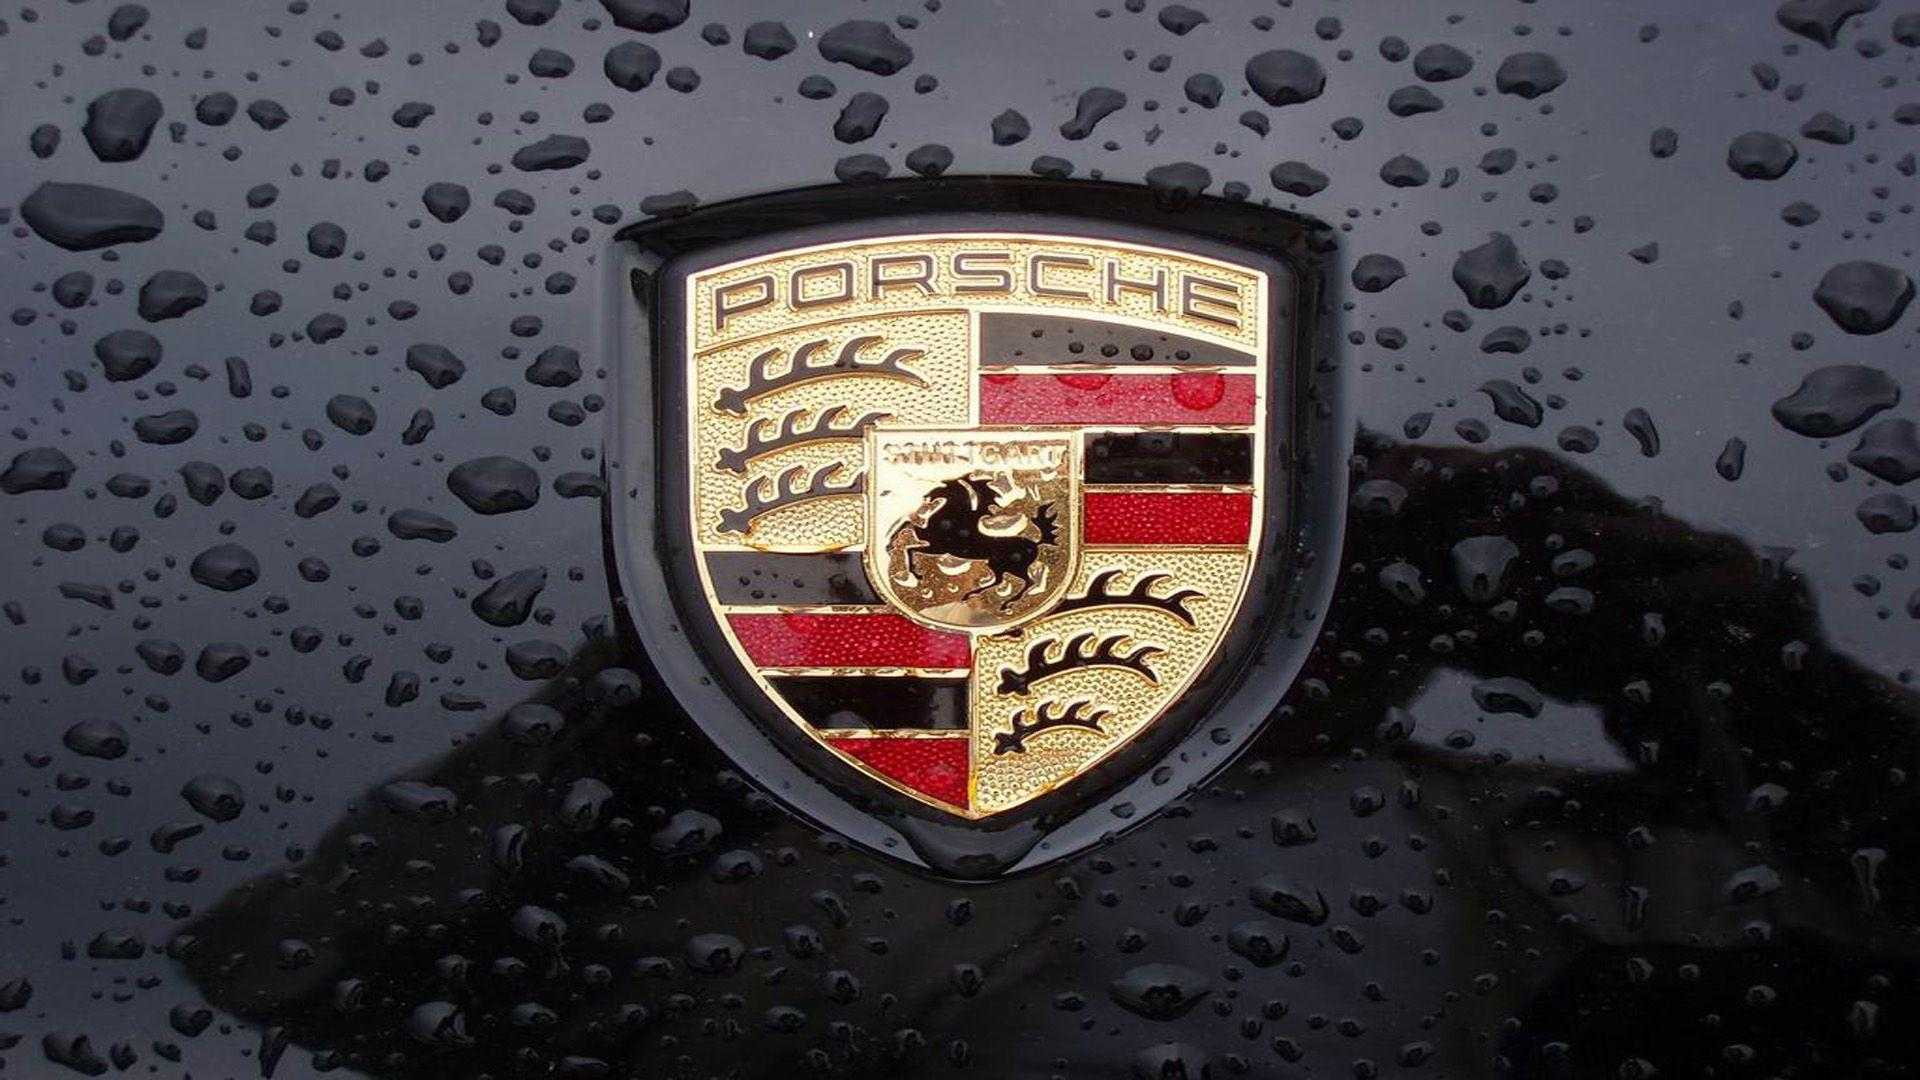 Porsche Logo on a car